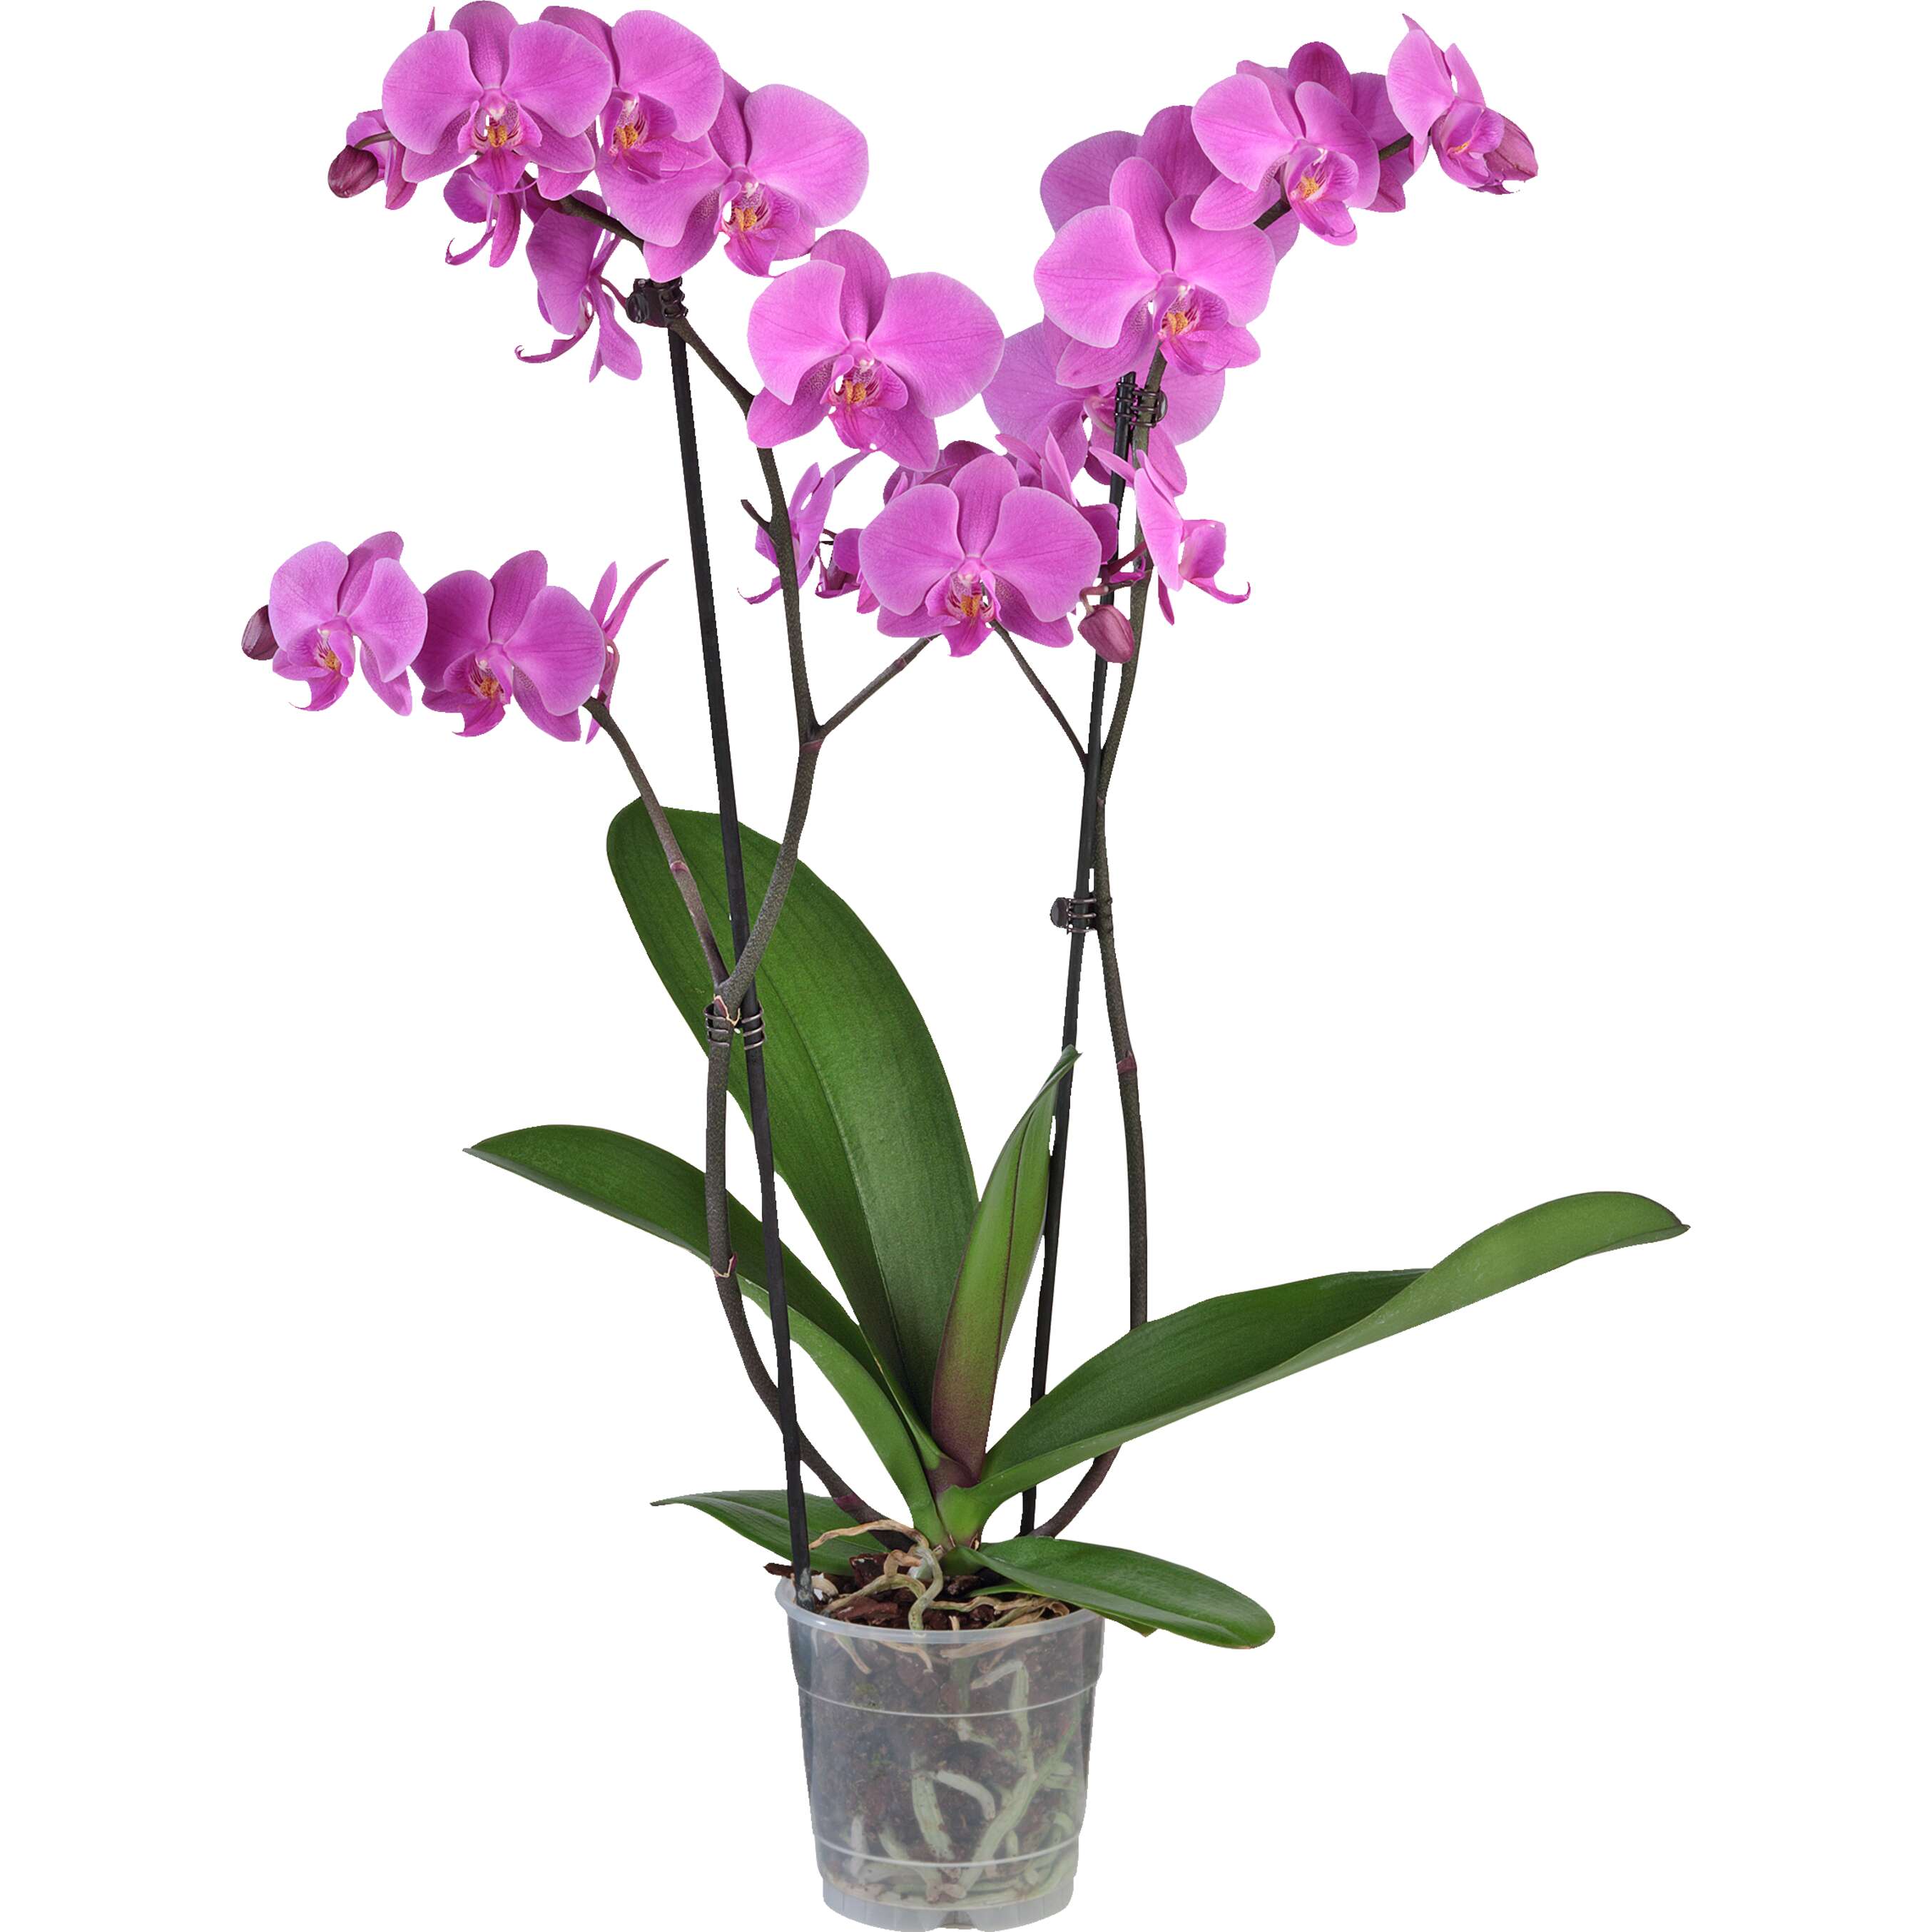 Zobrazit nabídku Orchidea-Phalaenopis 